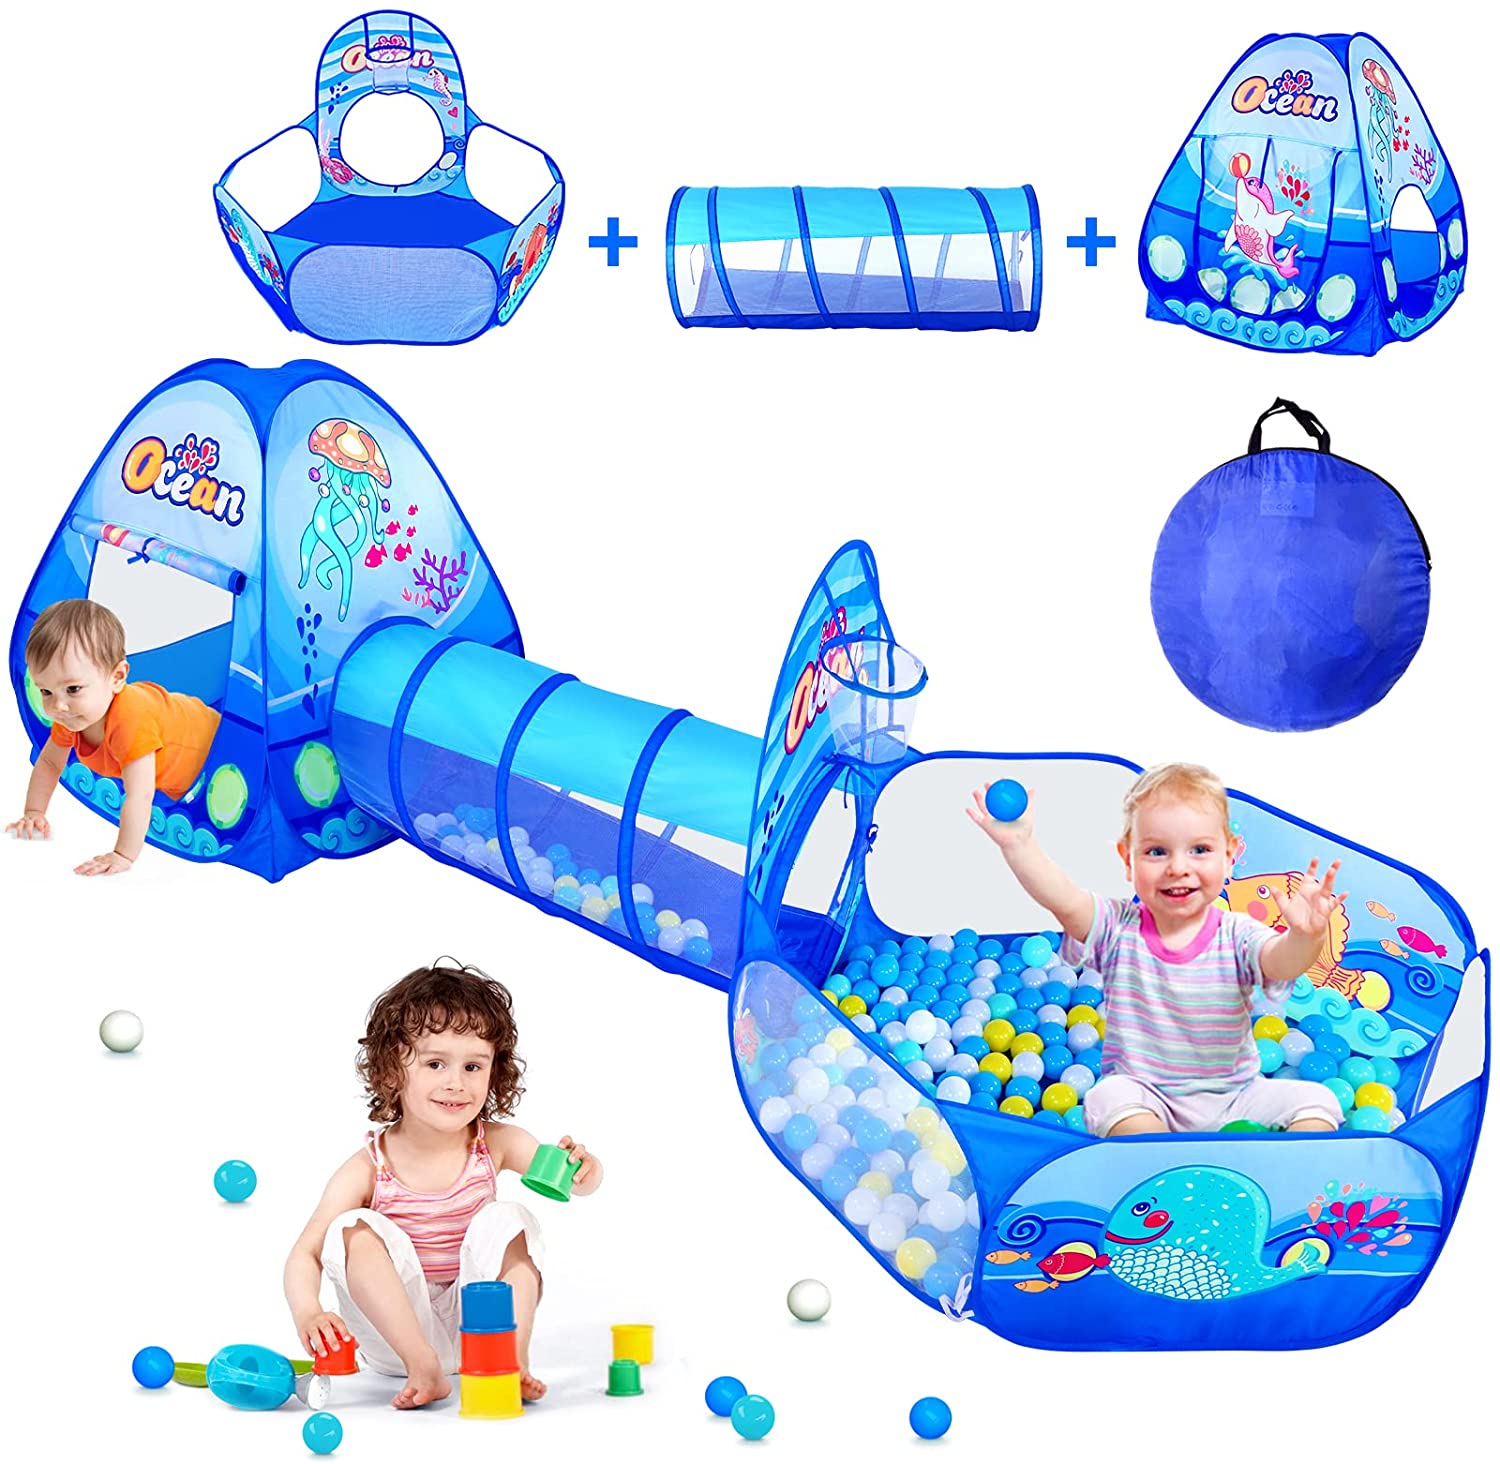 어린이 공 풀 공 구 덩이 아기 놀이터 놀이터 어린이 텐트 풍선 터널 아기 게임 공원